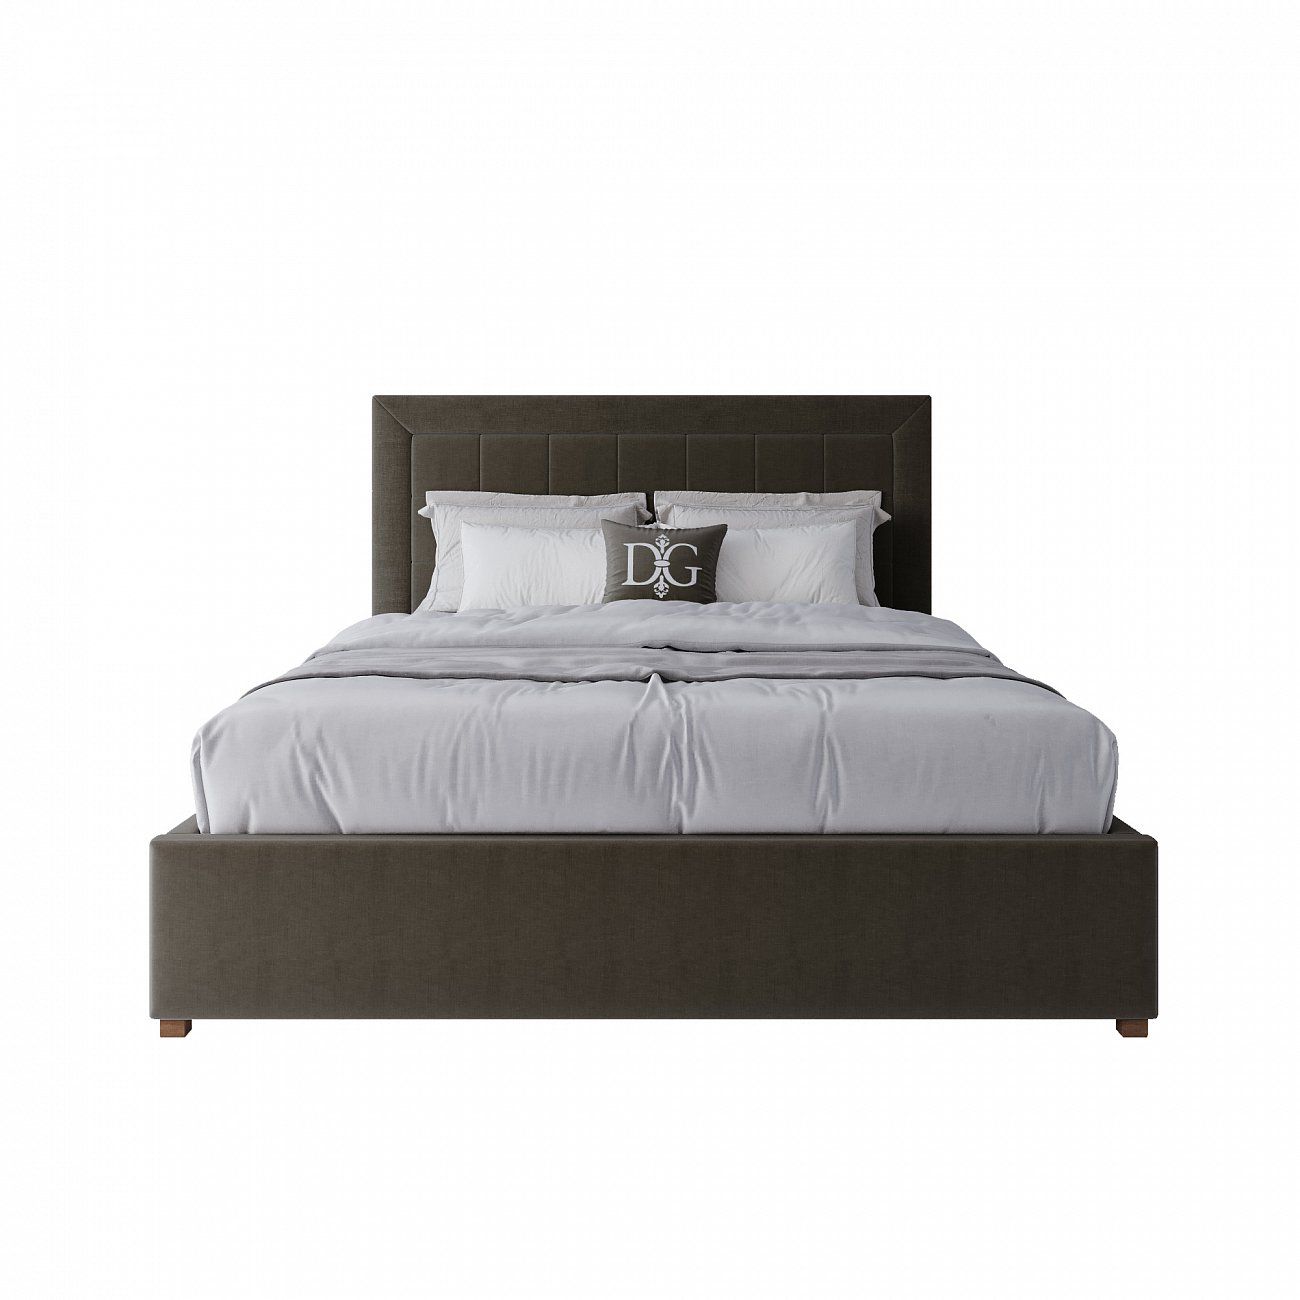 Кровать двуспальная 180х200 коричневая Elizabeth